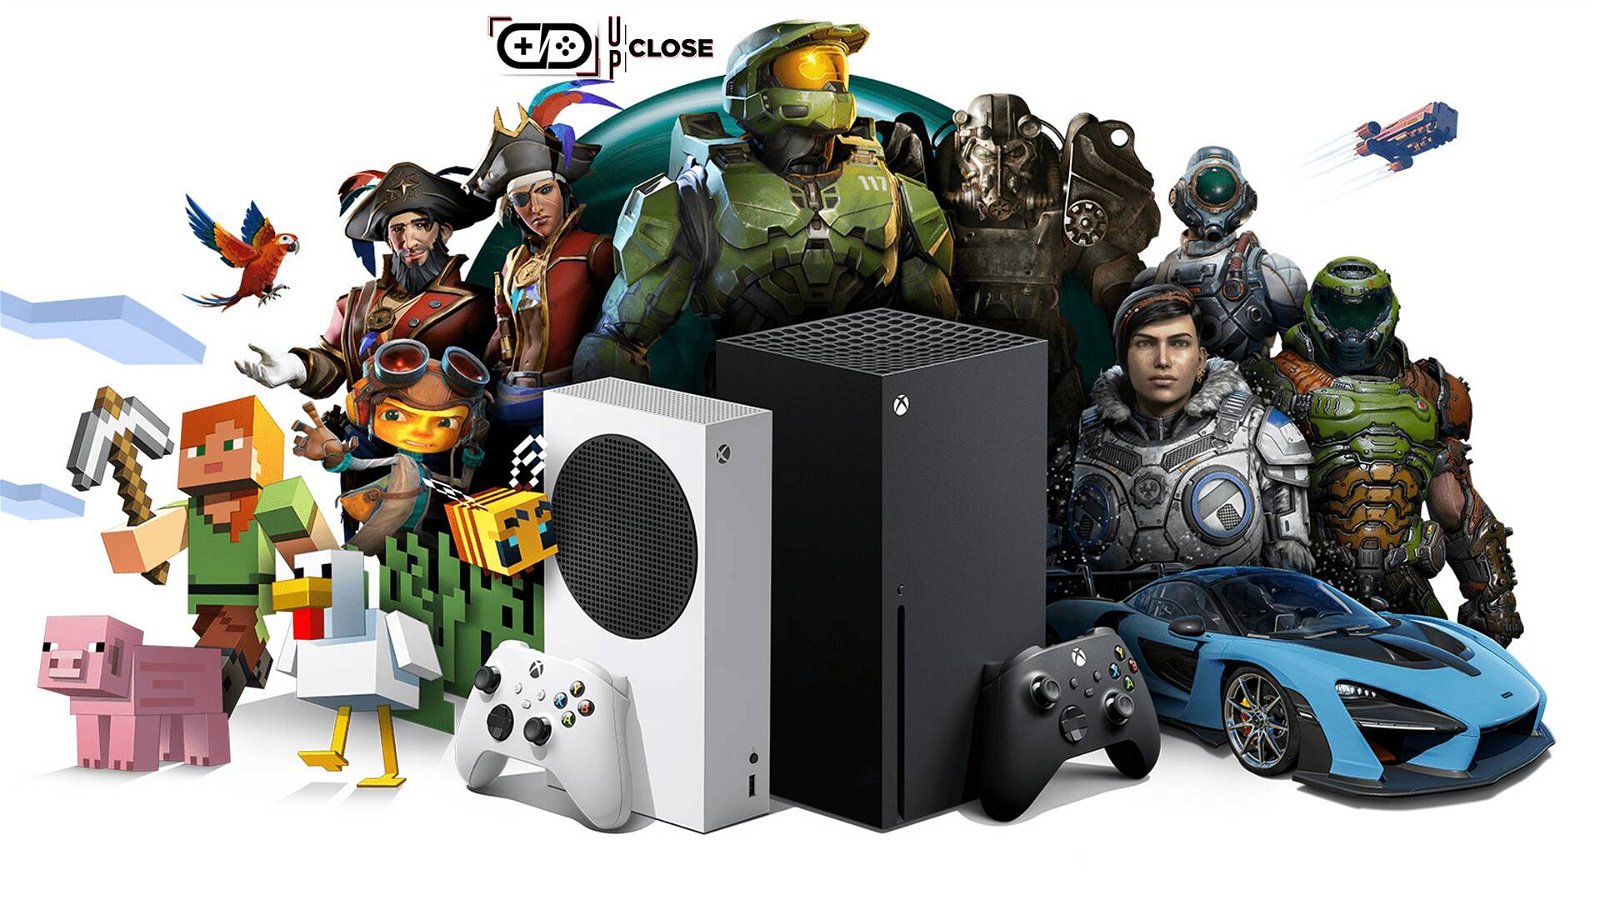 Immagine di Xbox All Access: come funziona, prezzi, giochi e disponibilità